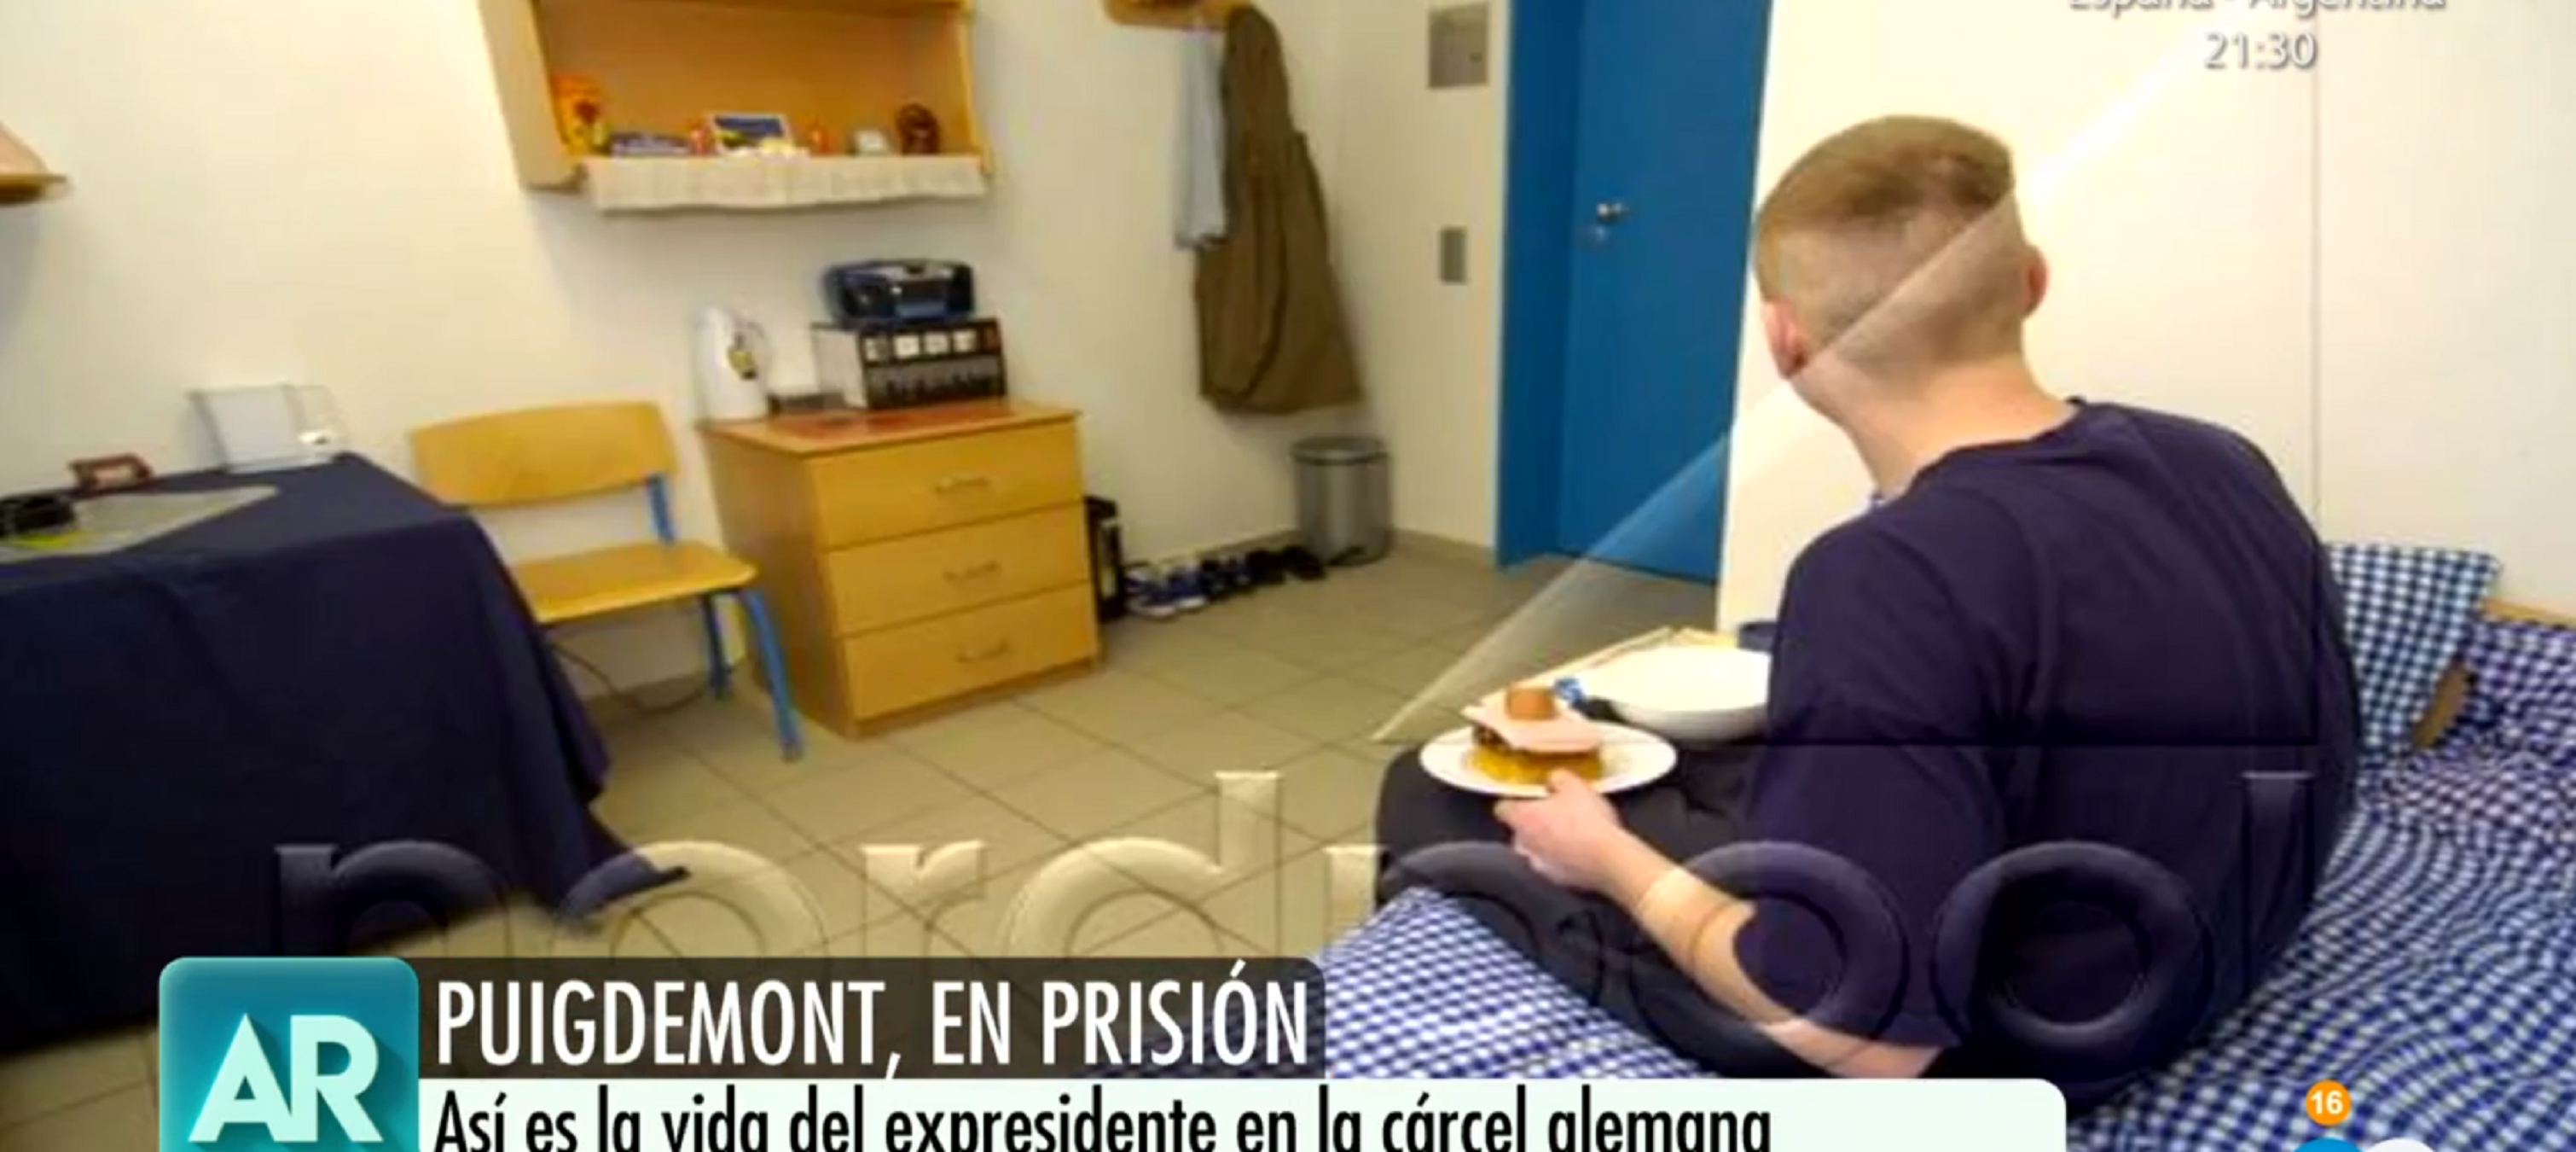 El morbo d'Ana Rosa mostrant la cel·la de la presó alemanya de Puigdemont